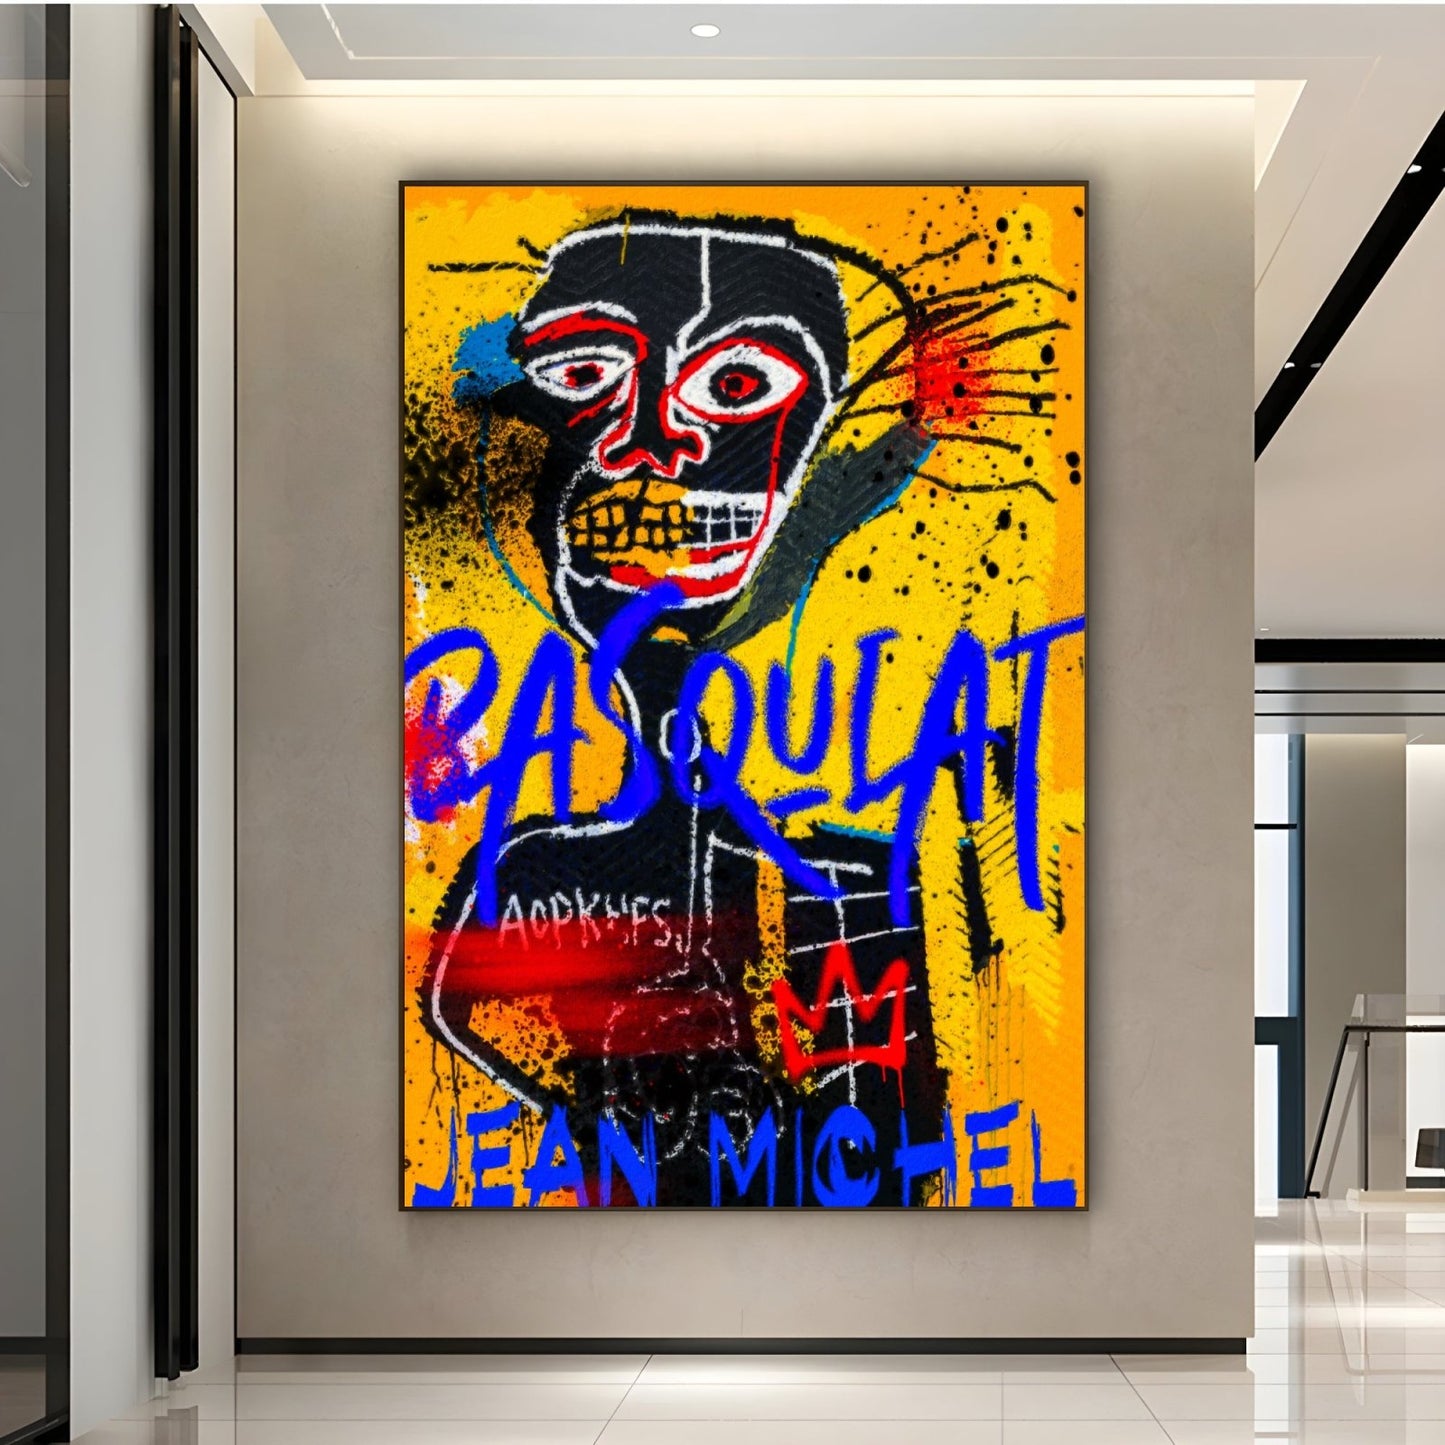 Jean Michel Basquiat Galben